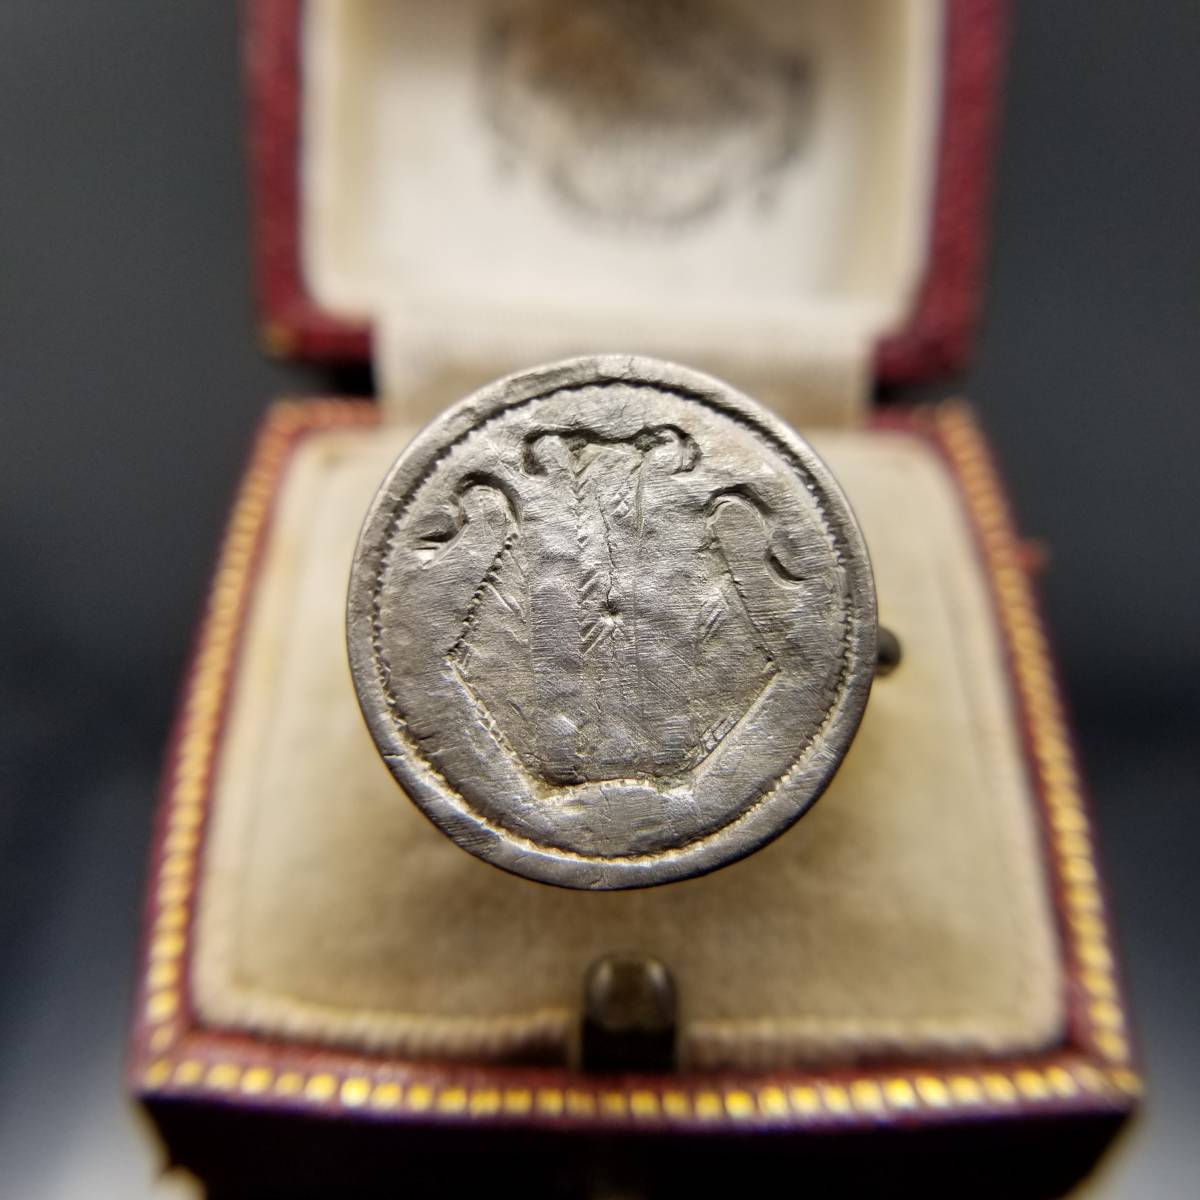 11世紀頃 騎士 シルバー シールリング モノグラム イニシャル M ナイト 指輪